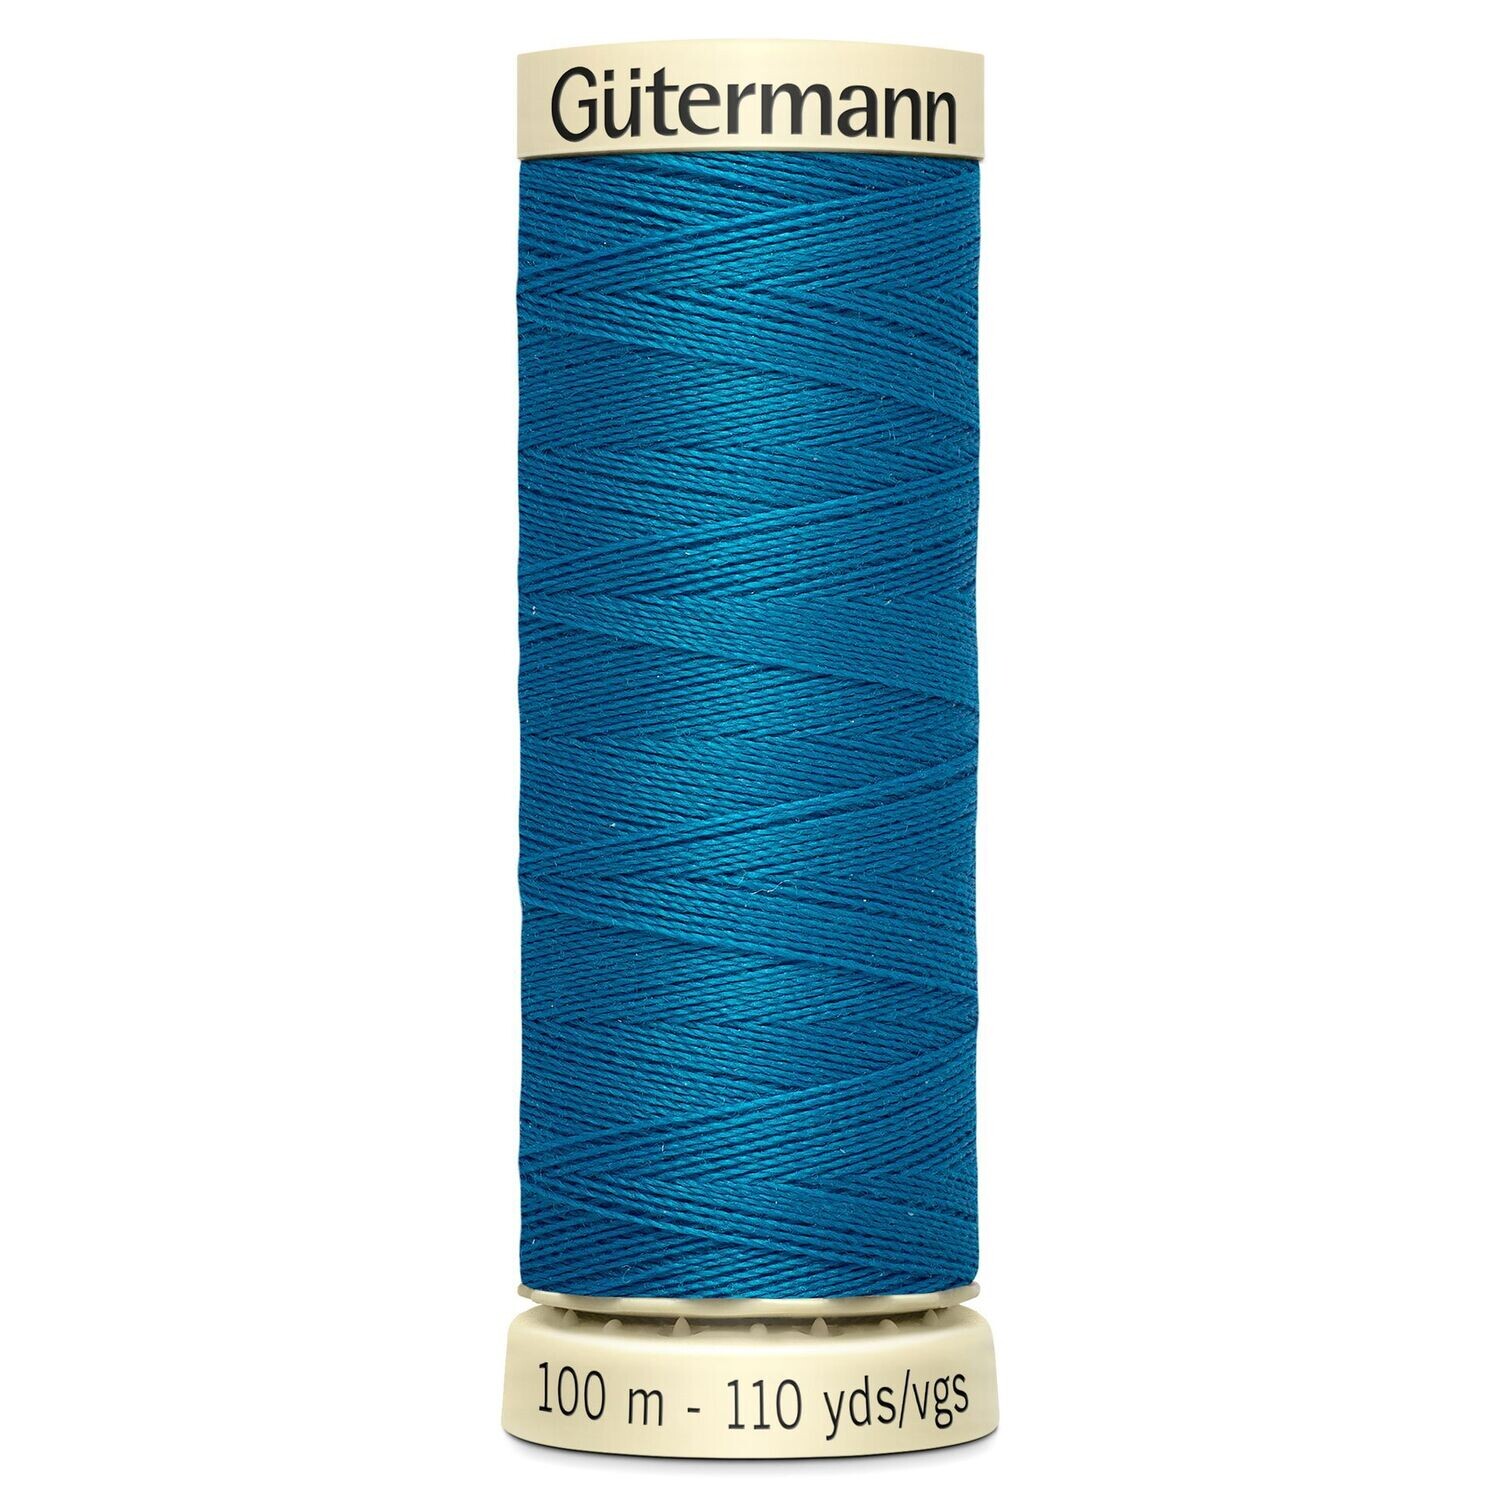 Sew All Thread 100m - Gutermann - Colour 025